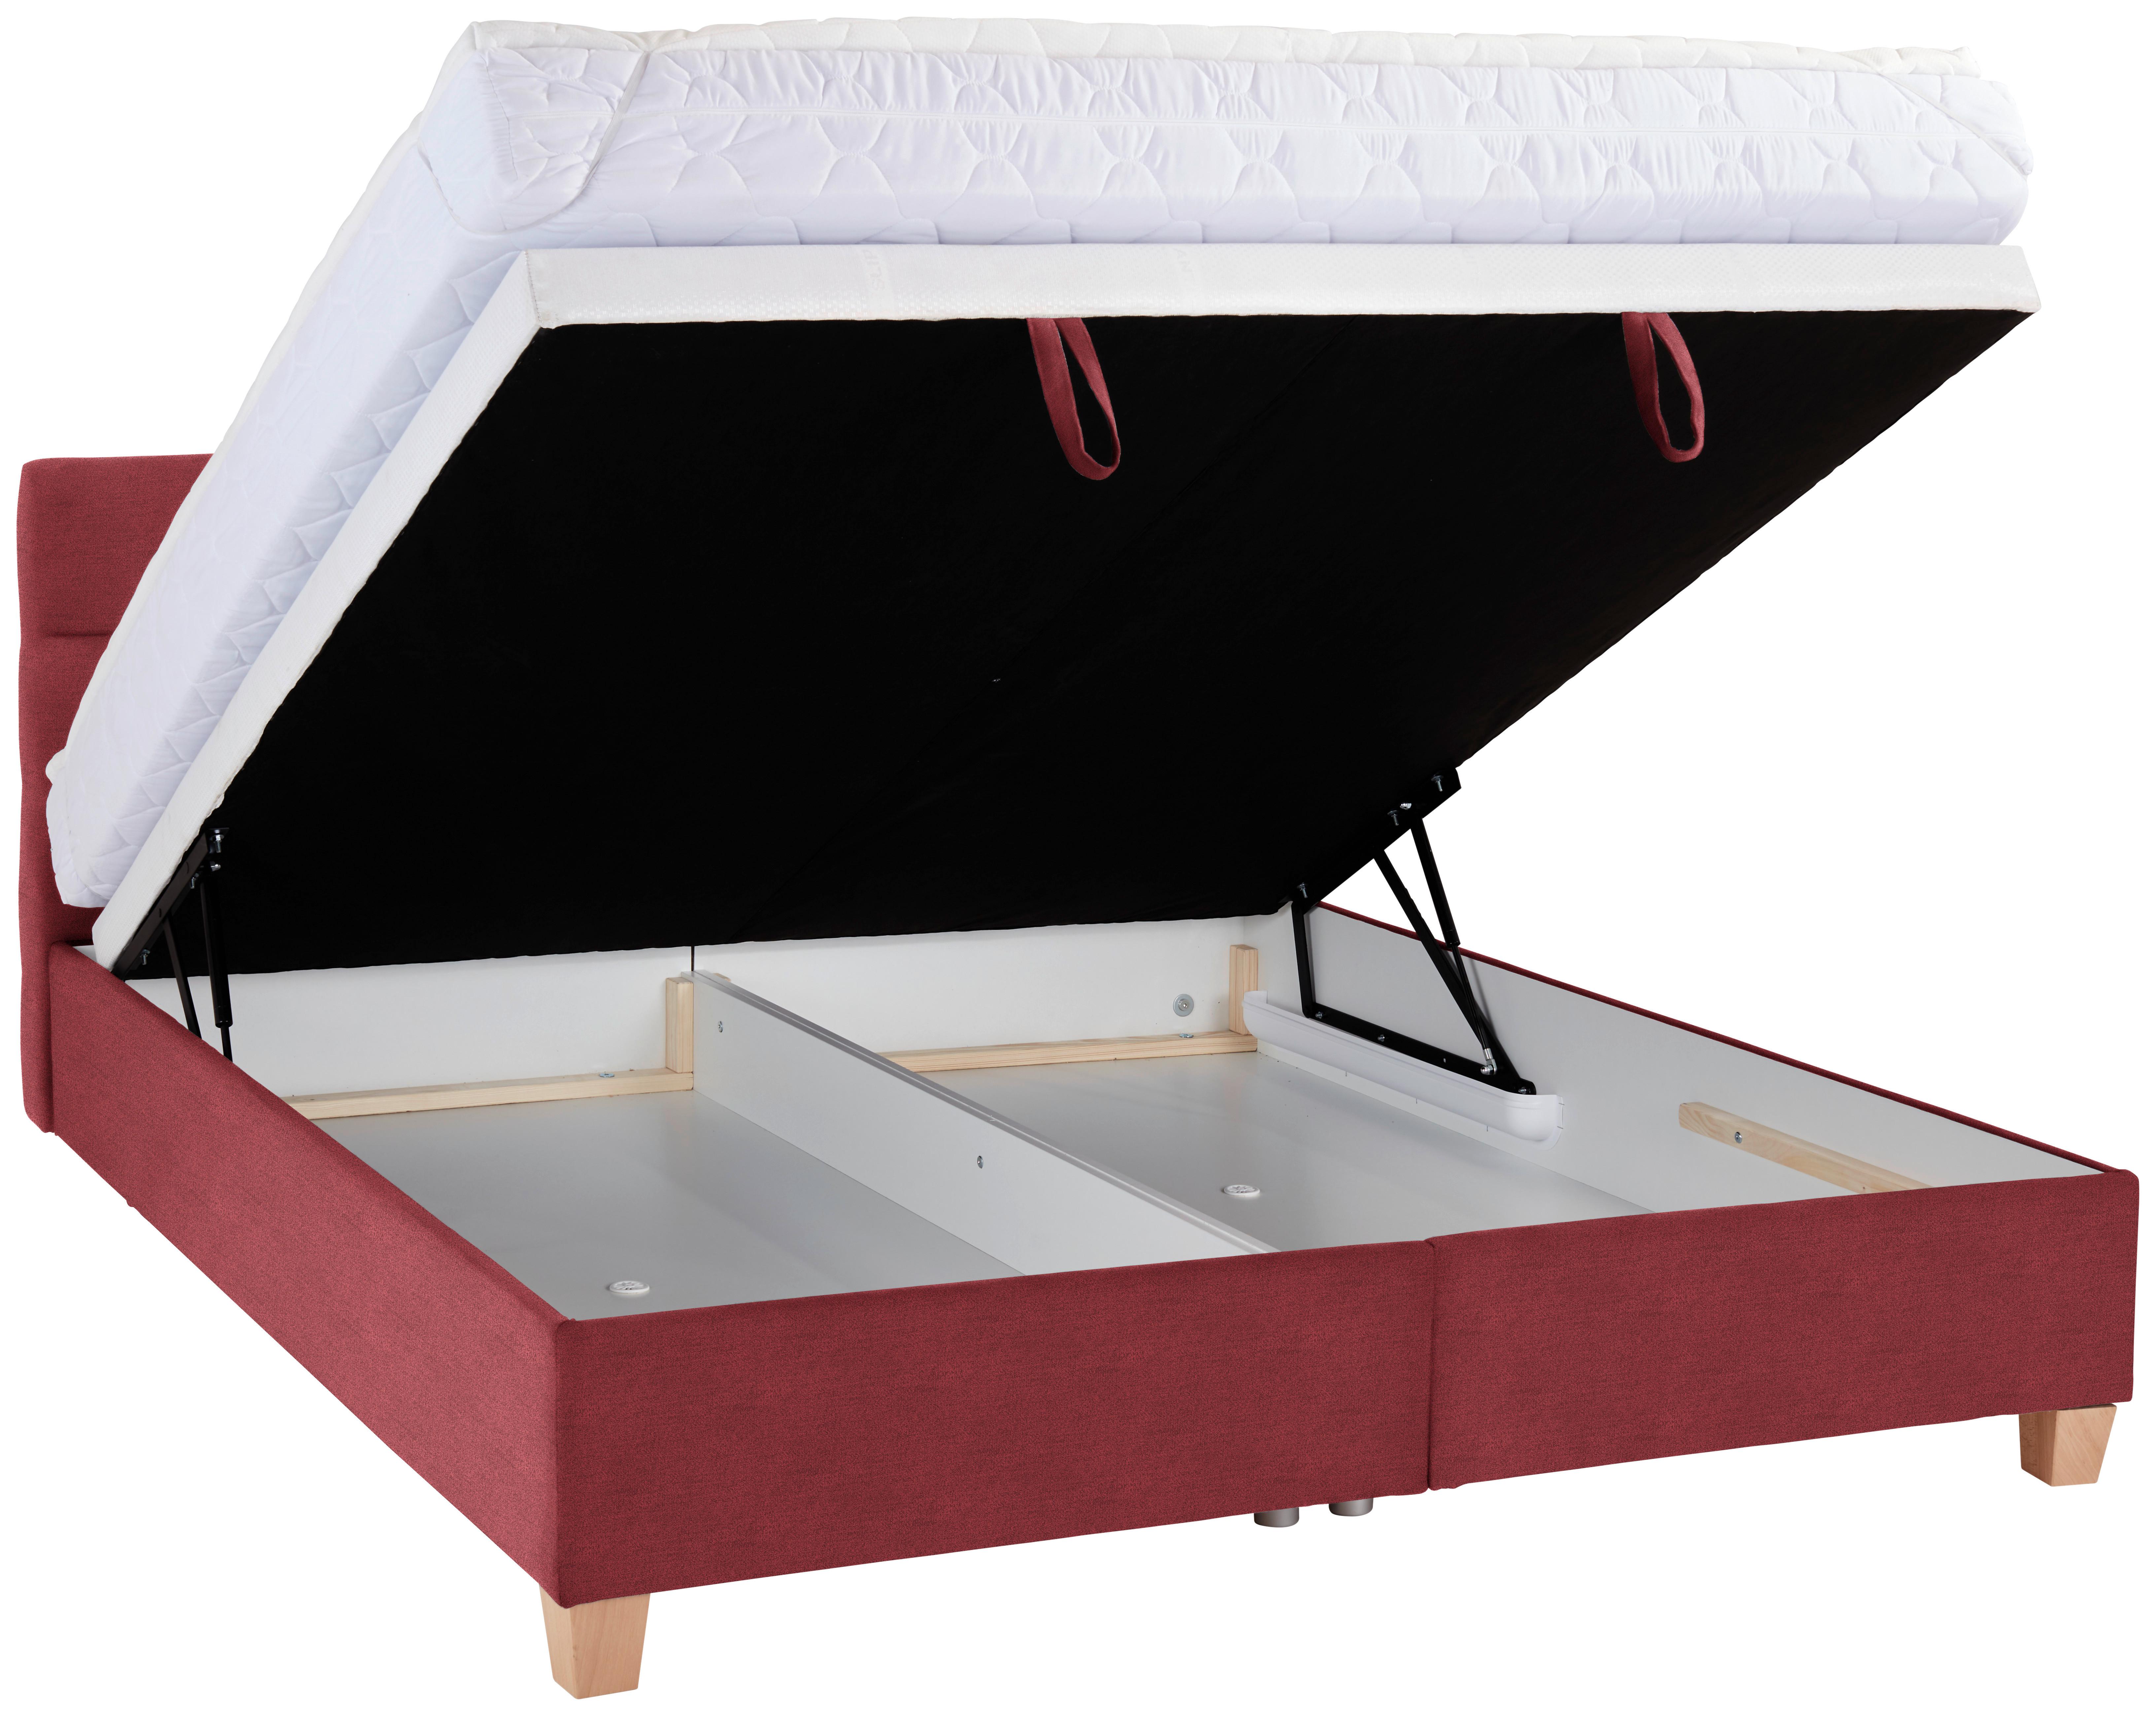 Čalouněná Postel Bellagio 140x200cm, Potah Bobulový - bílá/třešňová červená, Konvenční, dřevo/textil (140/200cm)